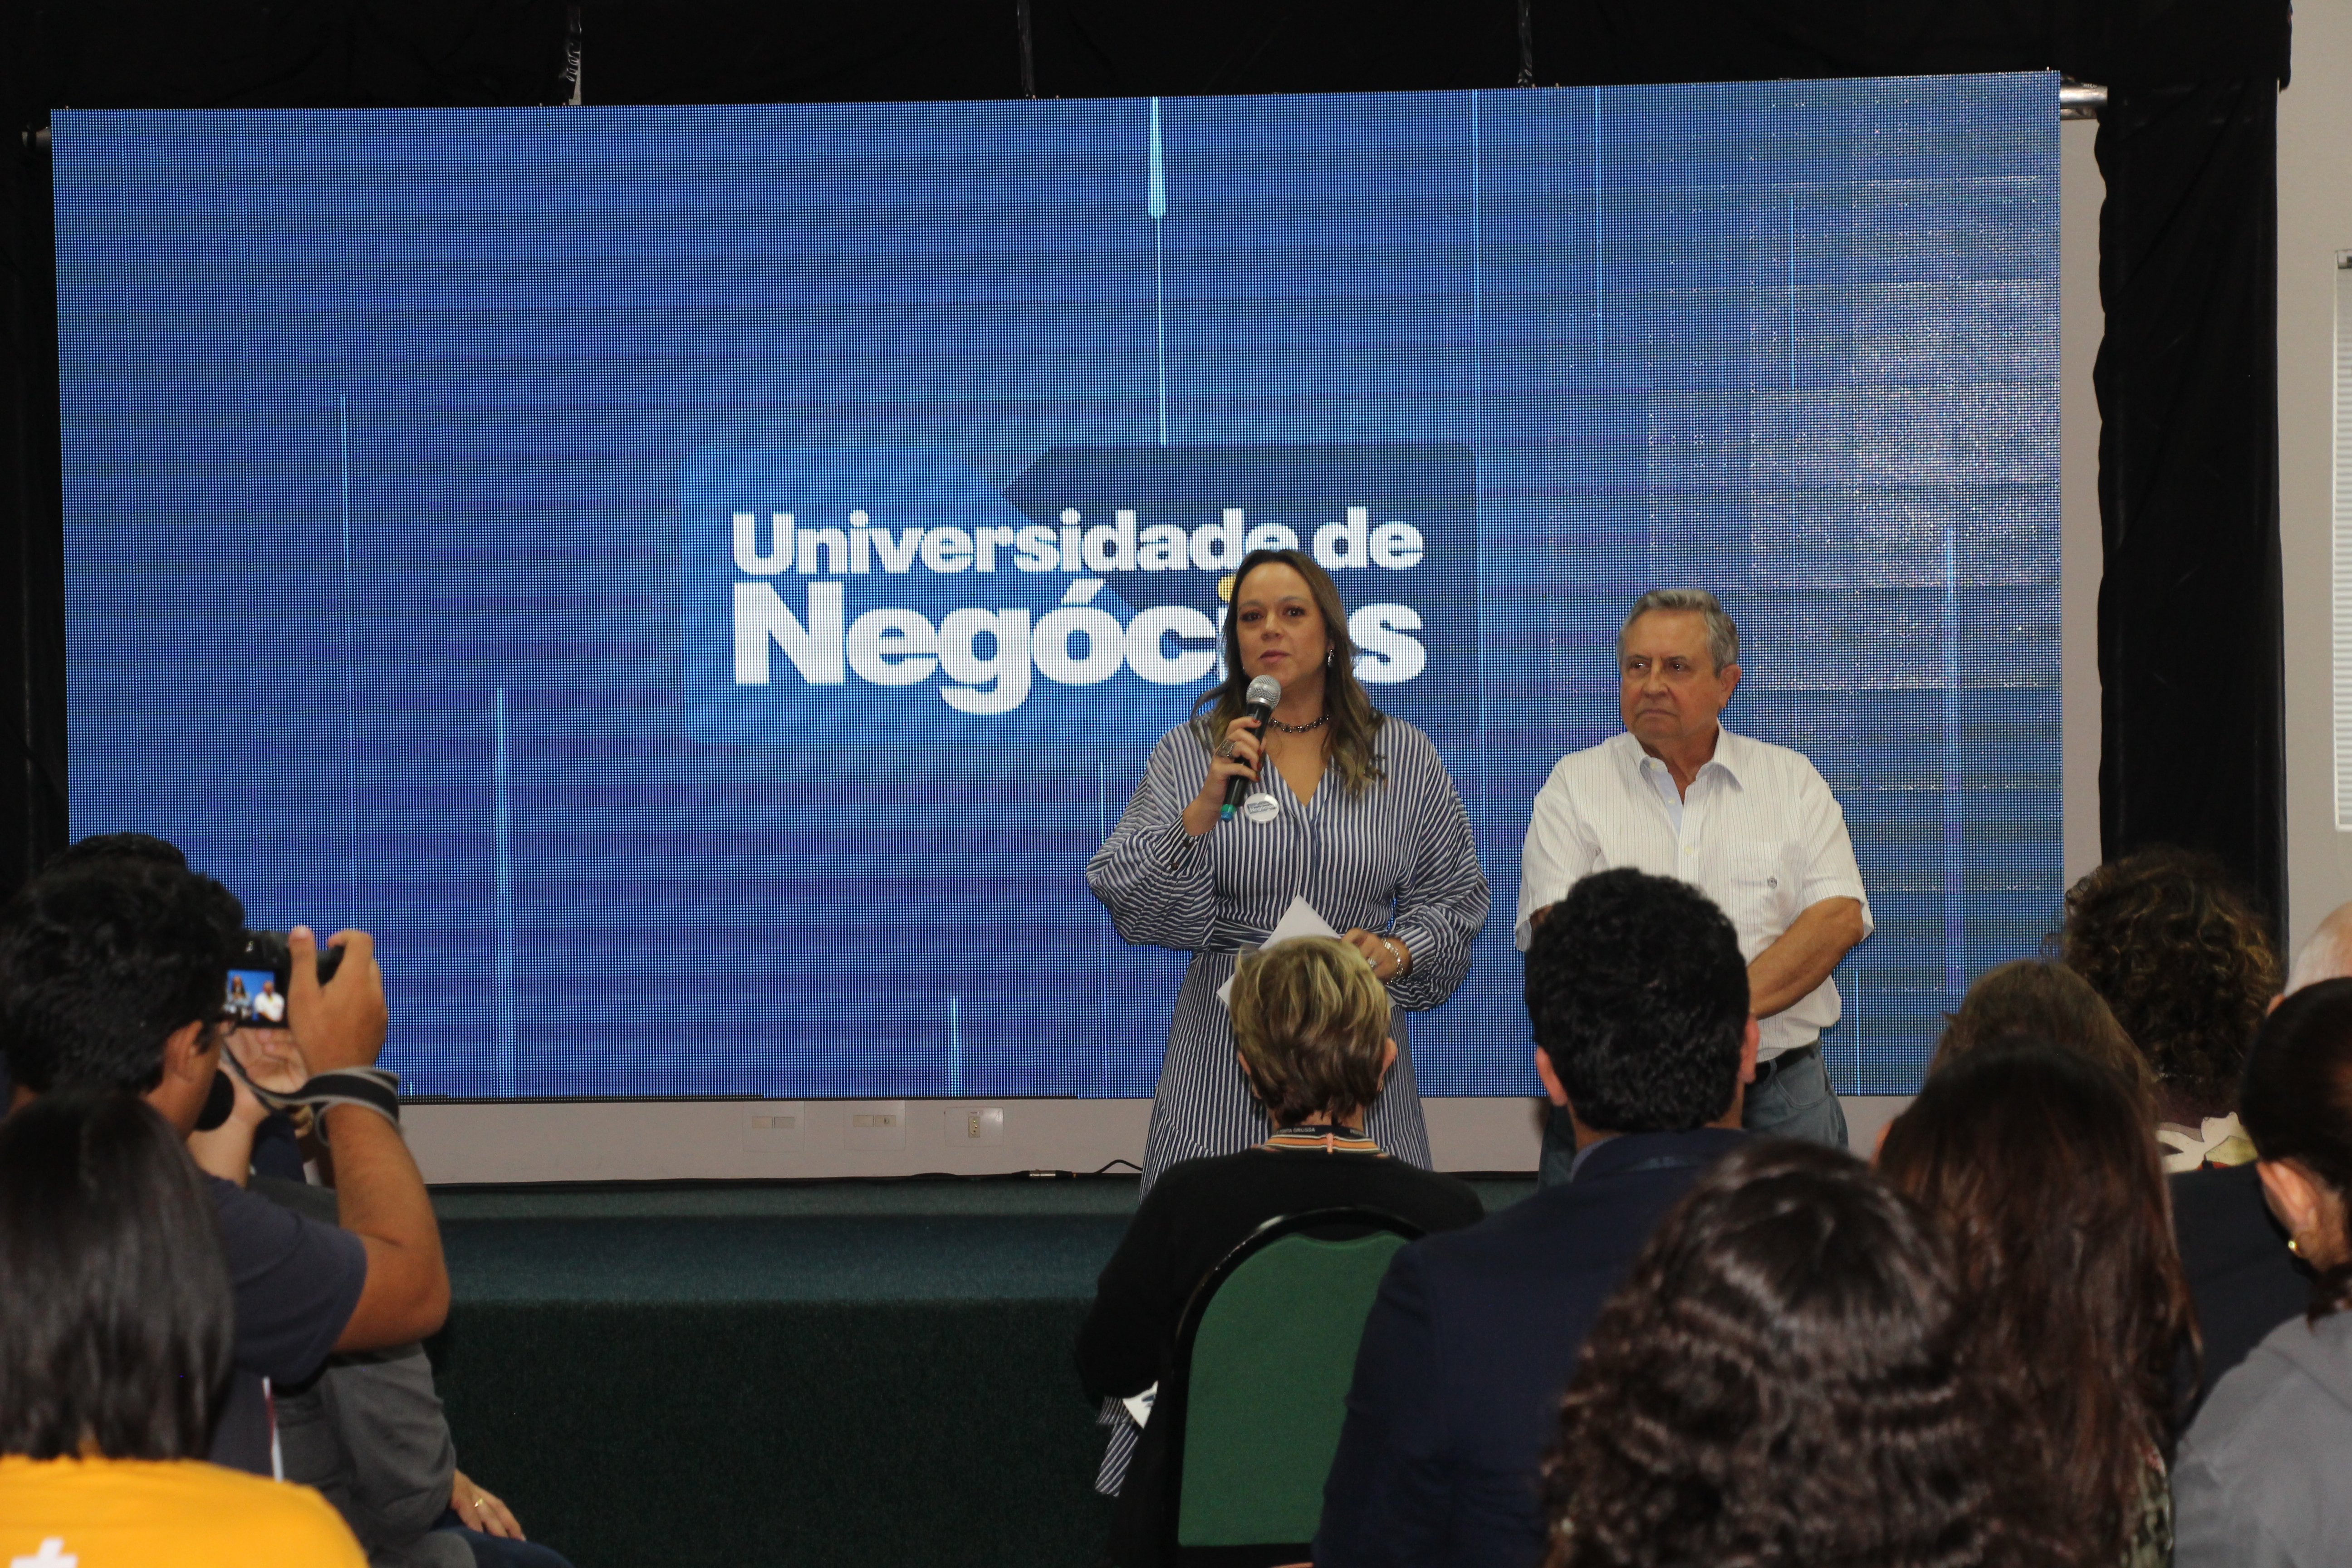 ACIPG e UniSecal lançam Universidade de Negócios com 'SuperGraduações'